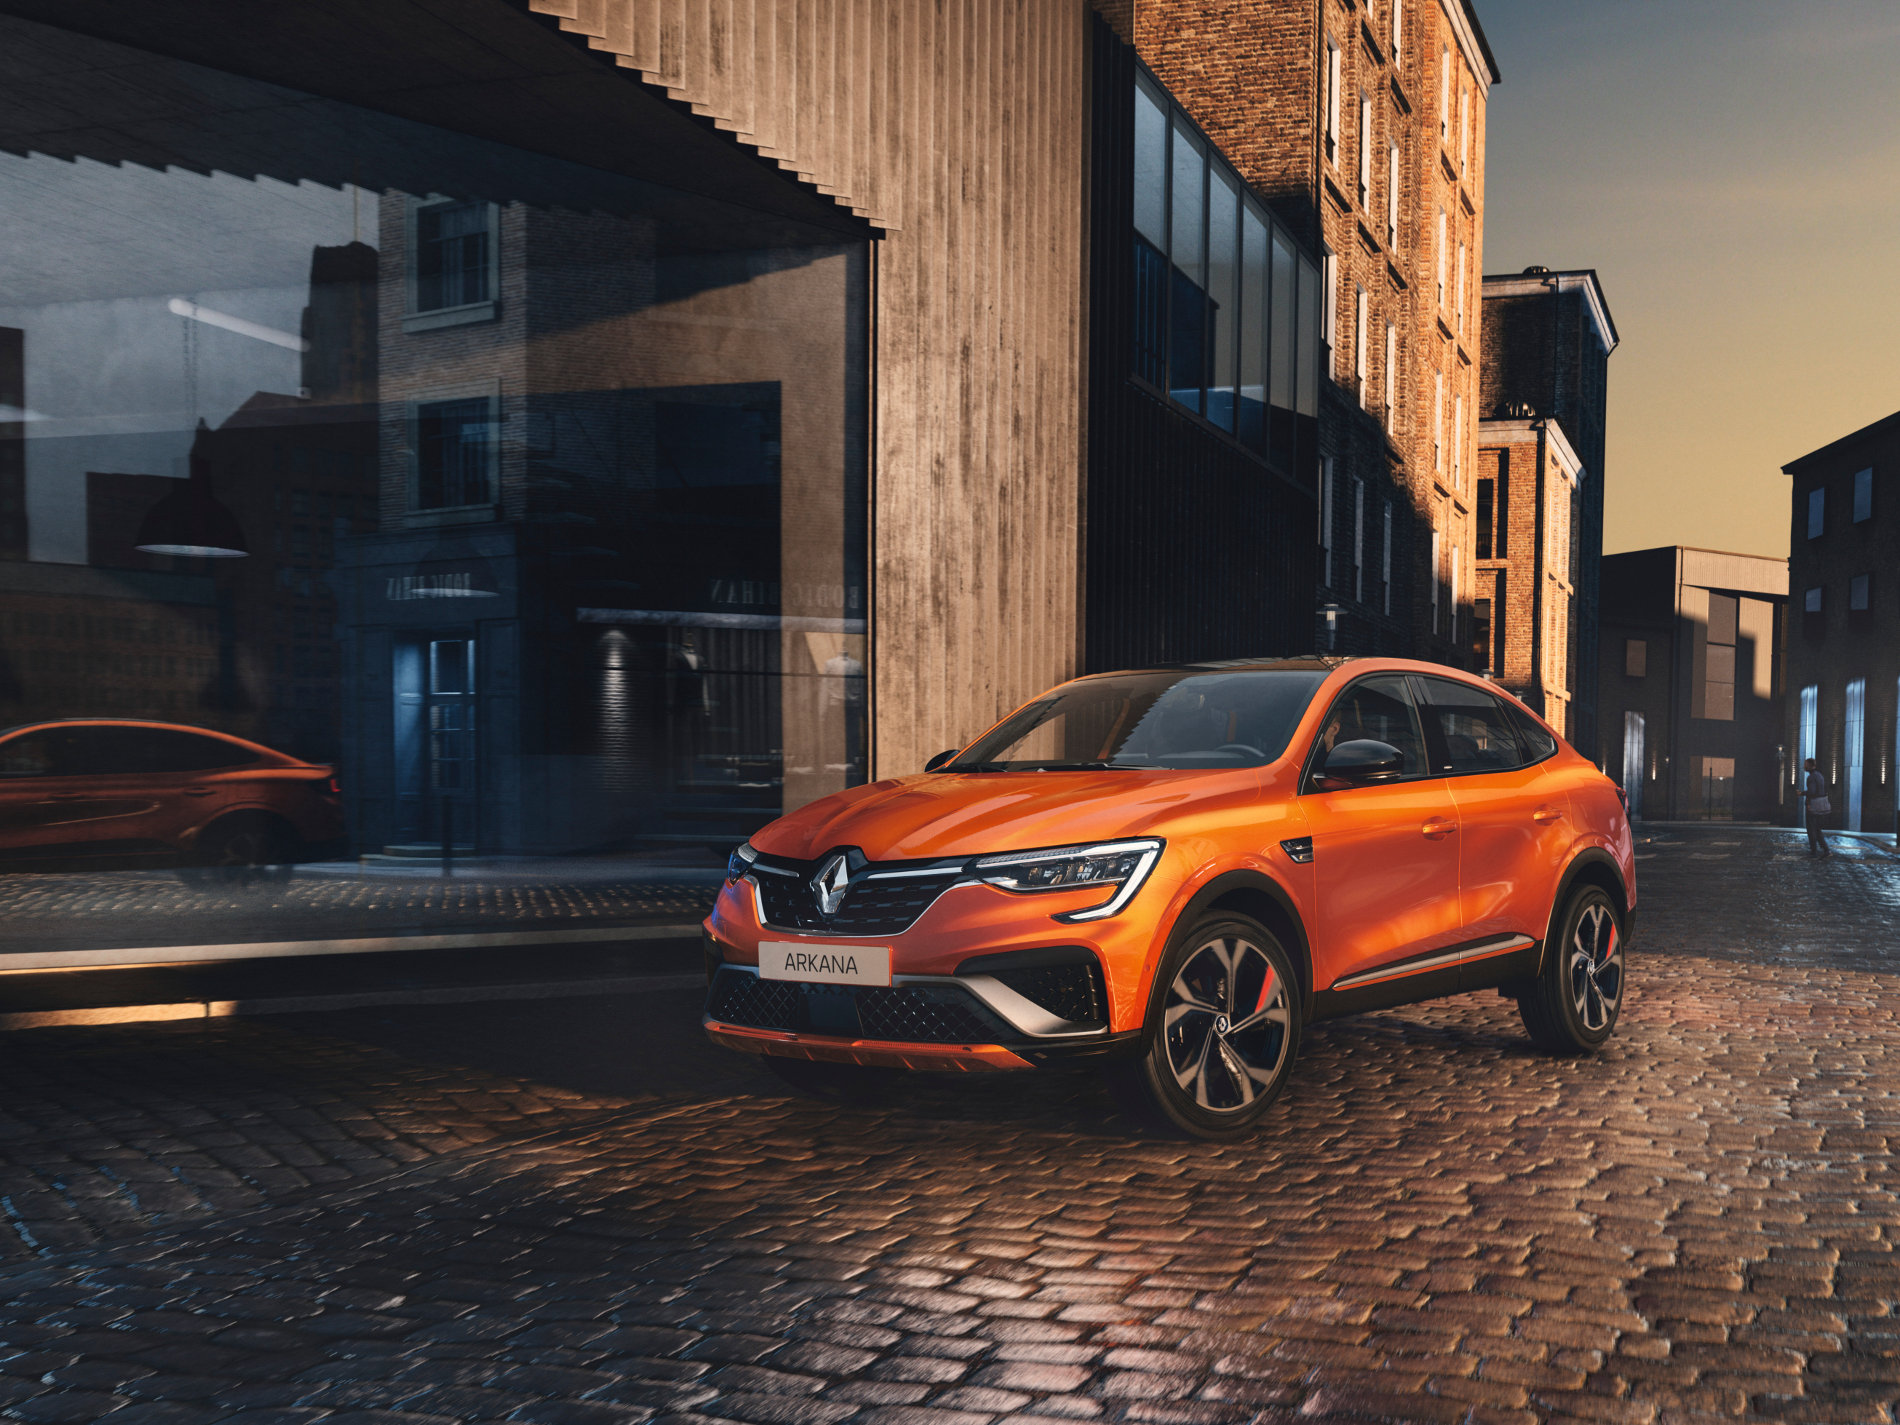 Renault dévoile son SUV coupé Arkana sur le marché européen avec des motorisations hybrides